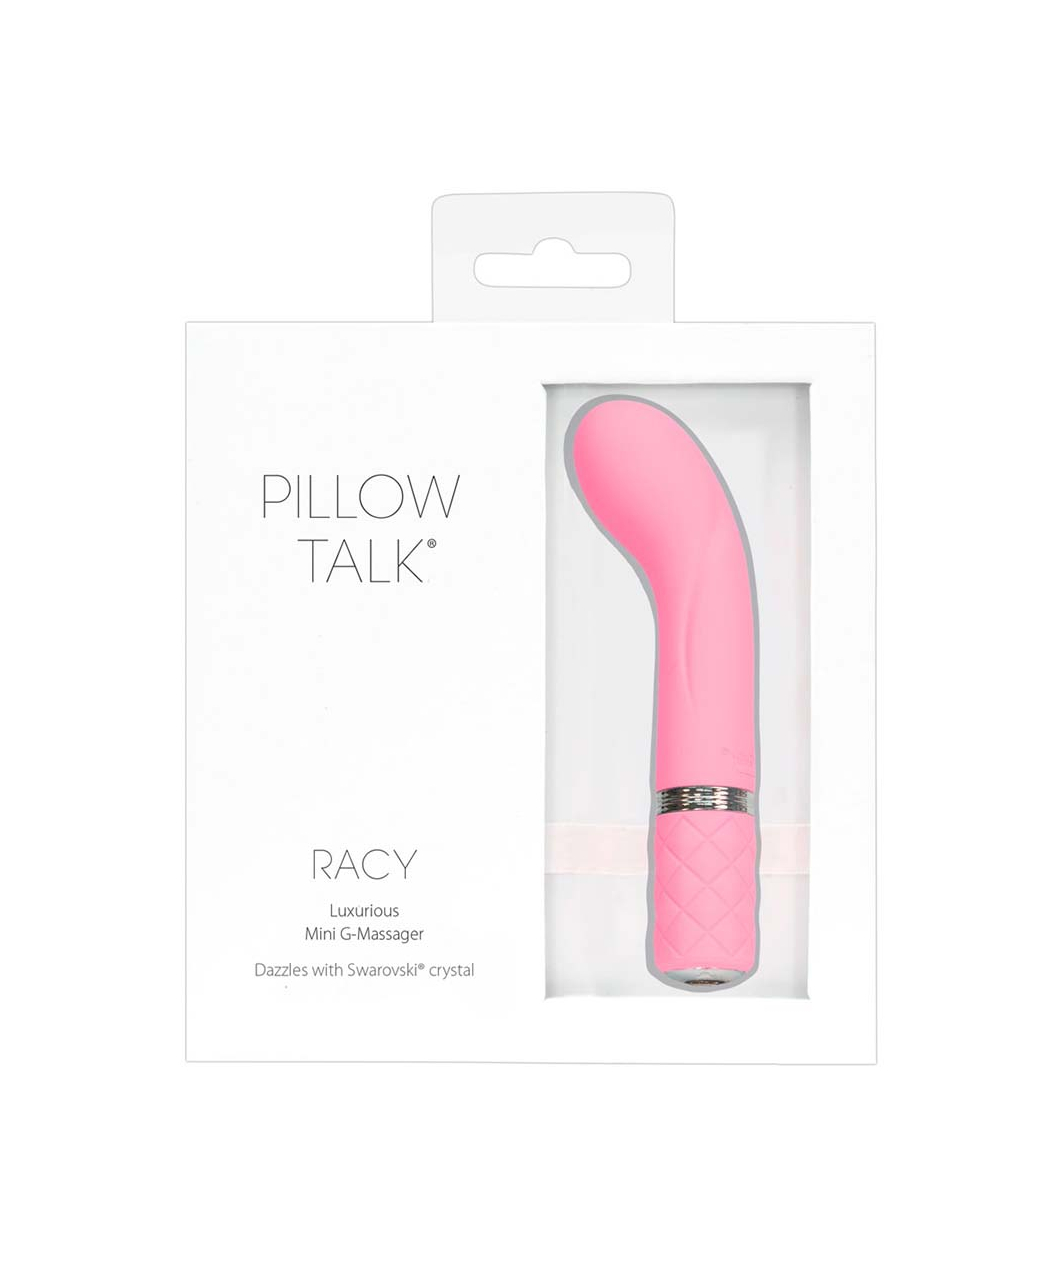 Pillow Talk Racy vibrator